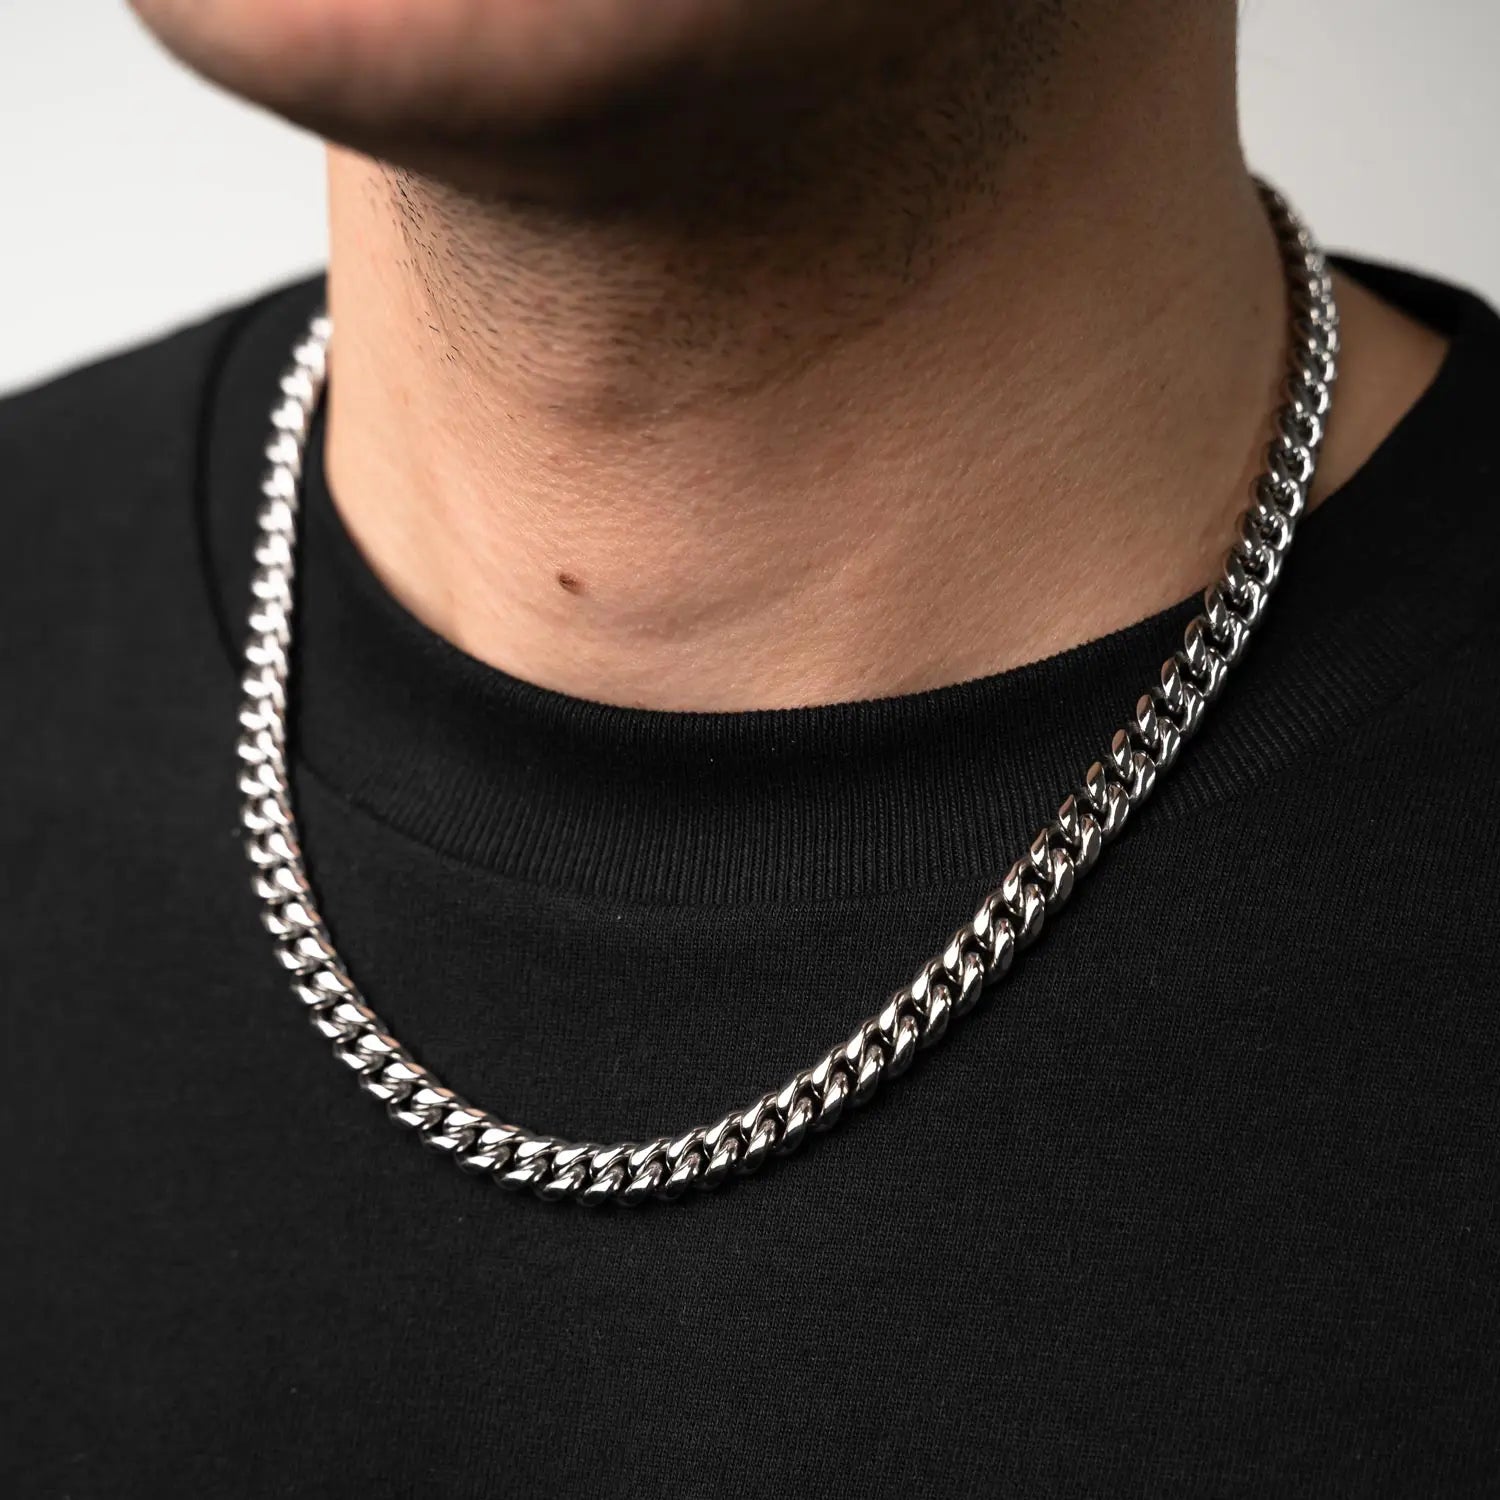 Cuban Link Halskette in 8mm breite getragen von einer männlichen Person am Hals